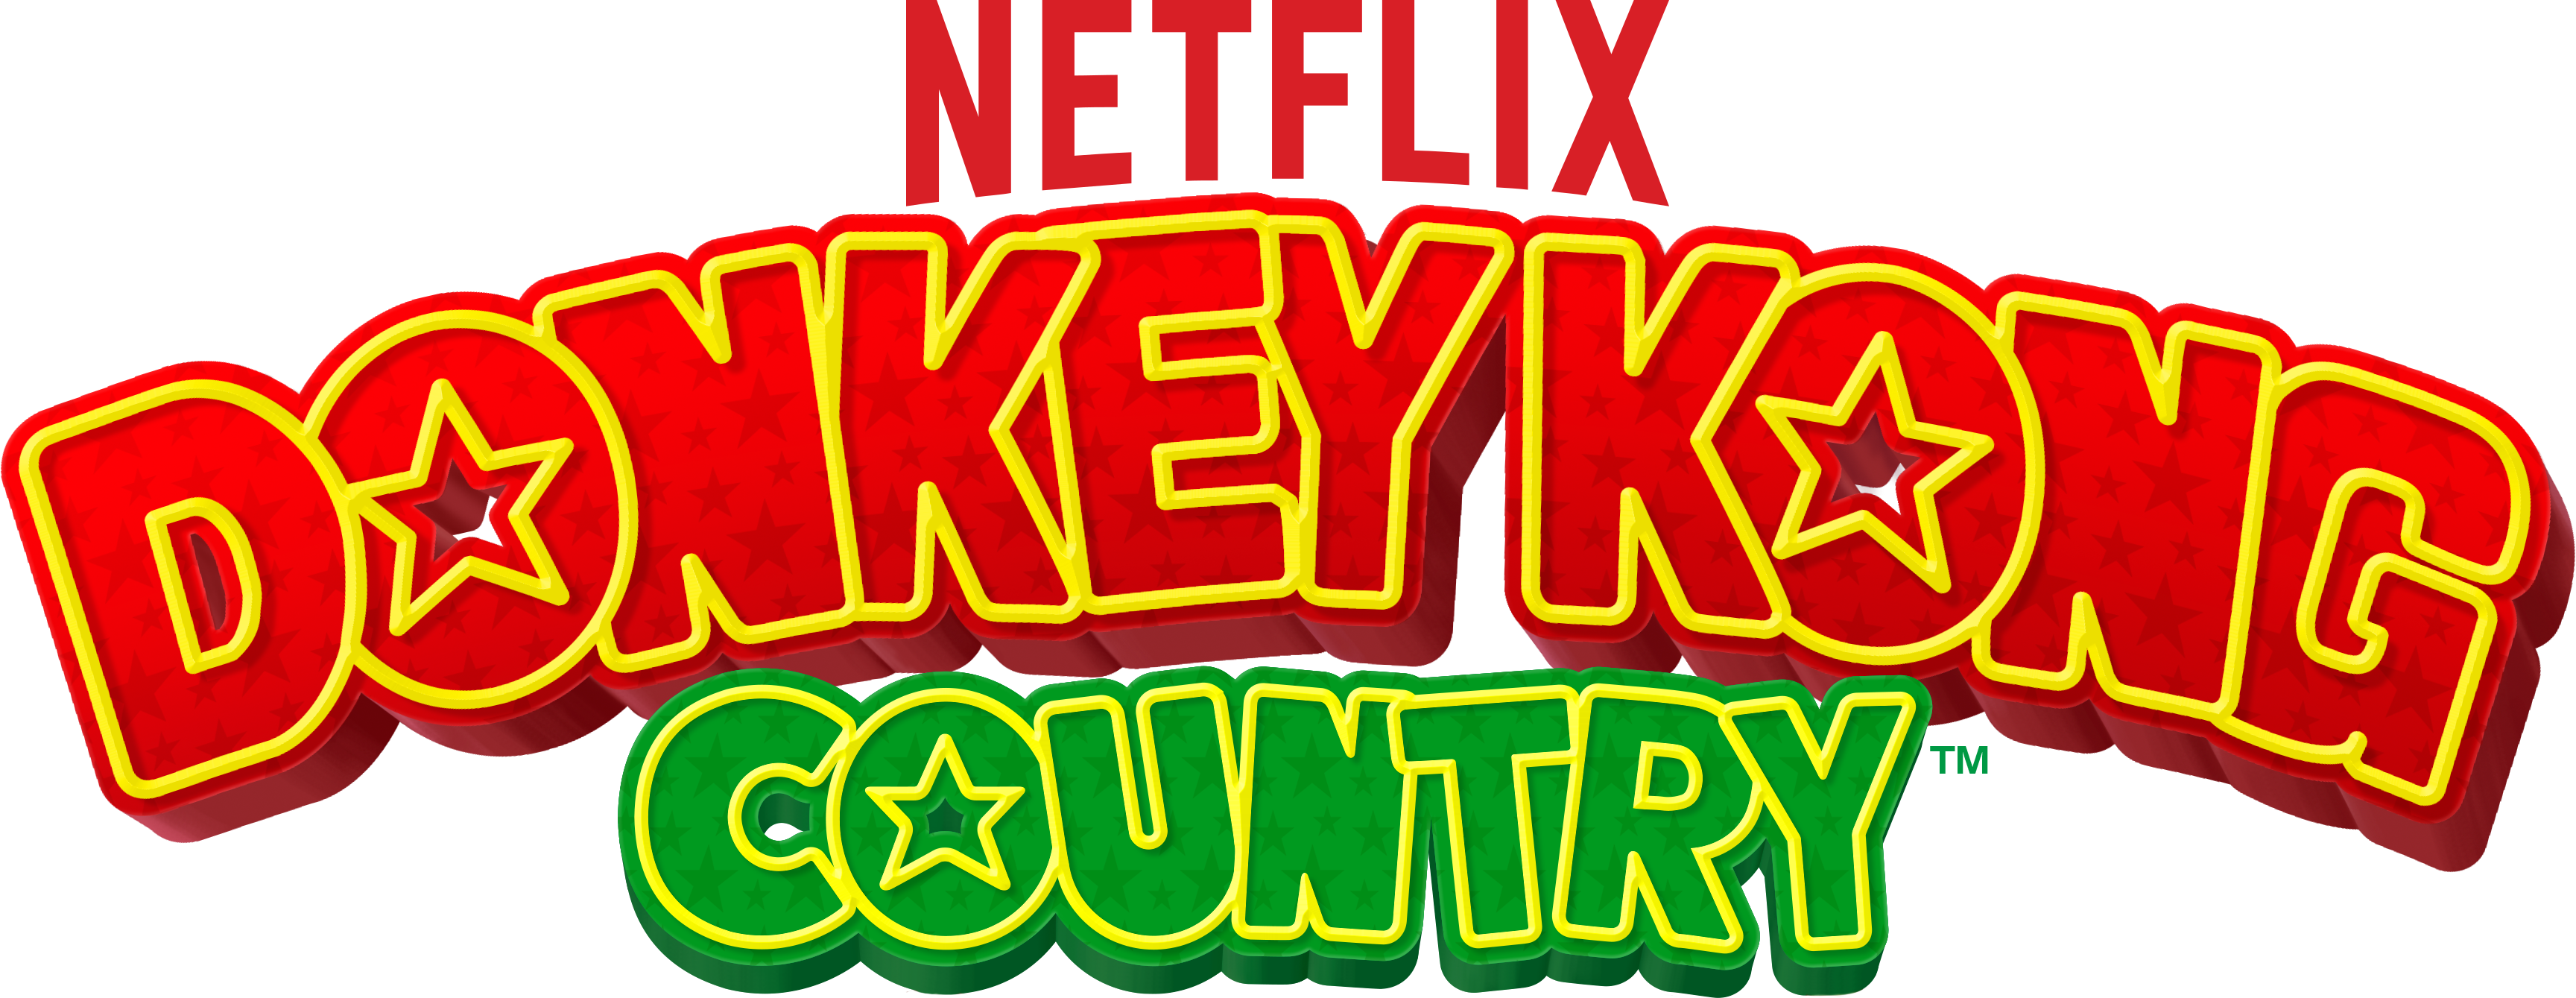 Donkey Kong Logo Transparent Image